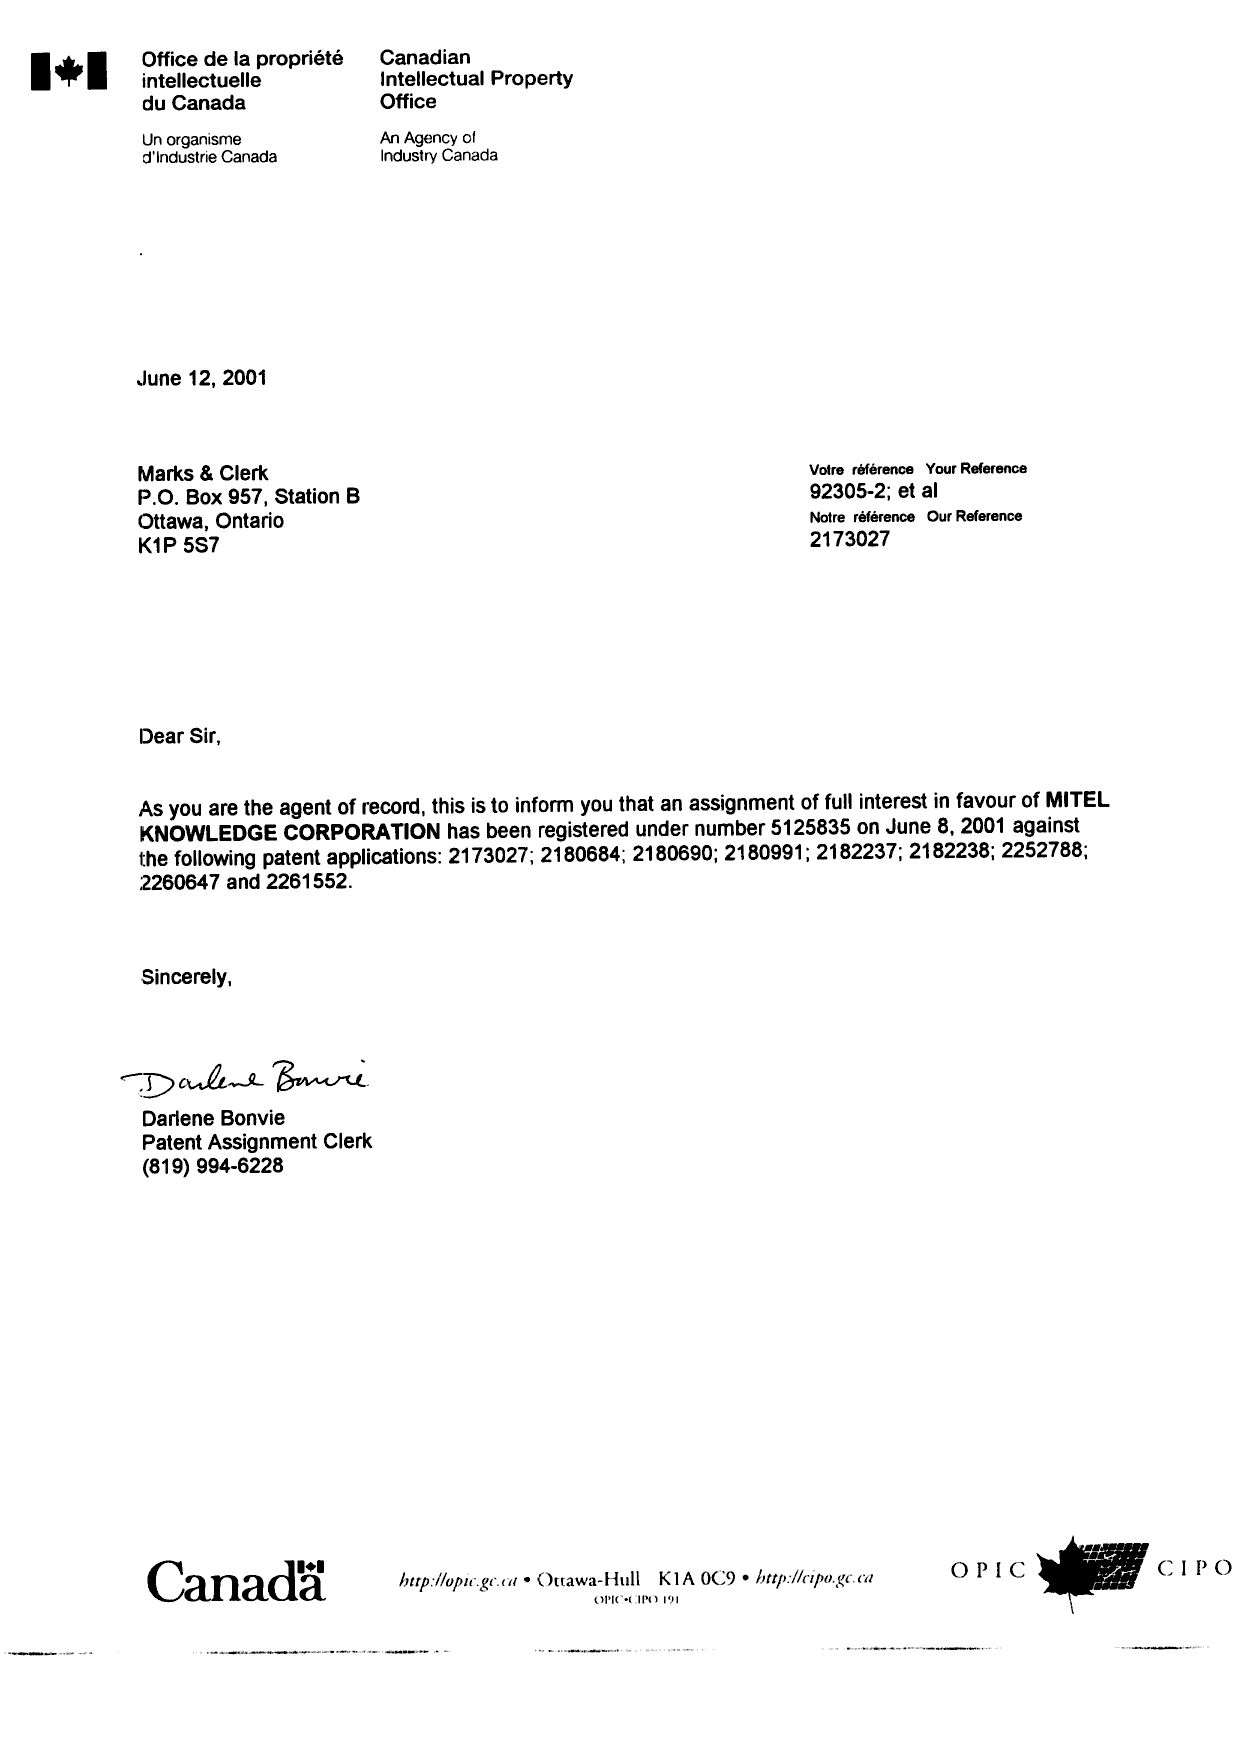 Document de brevet canadien 2252788. Correspondance 20010612. Image 1 de 1